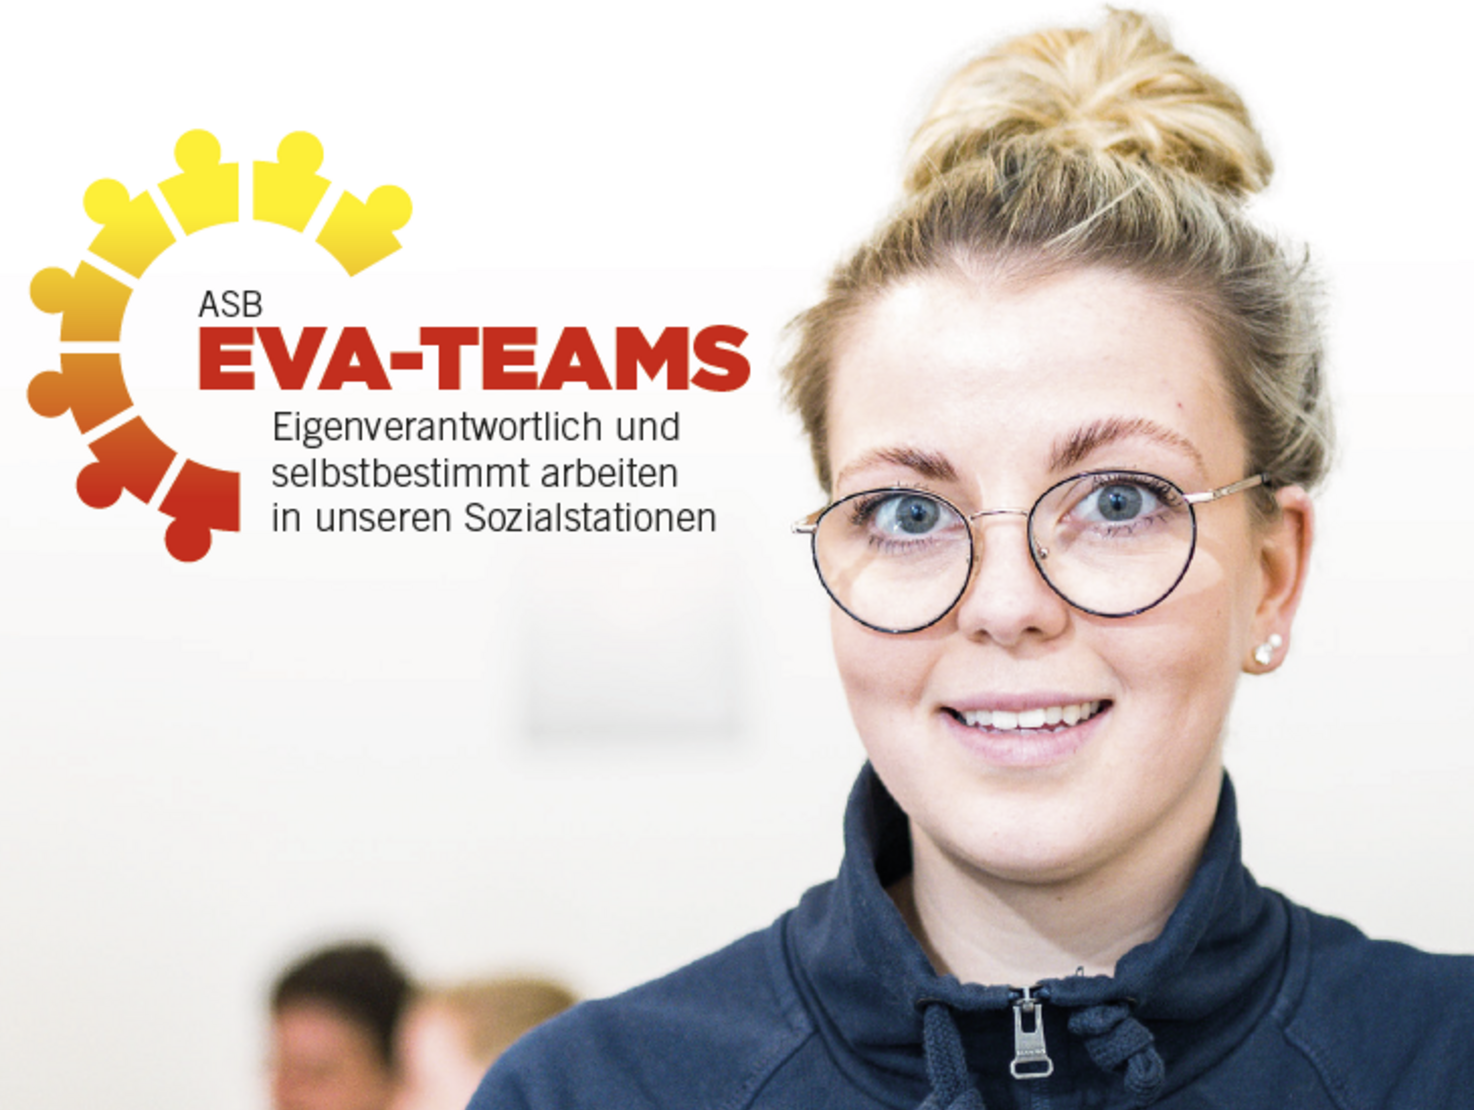 ASB EVA-Teams - Eigenverantwortlich und selbstbestimmt arbeiten in unseren ASB-Sozialstationen